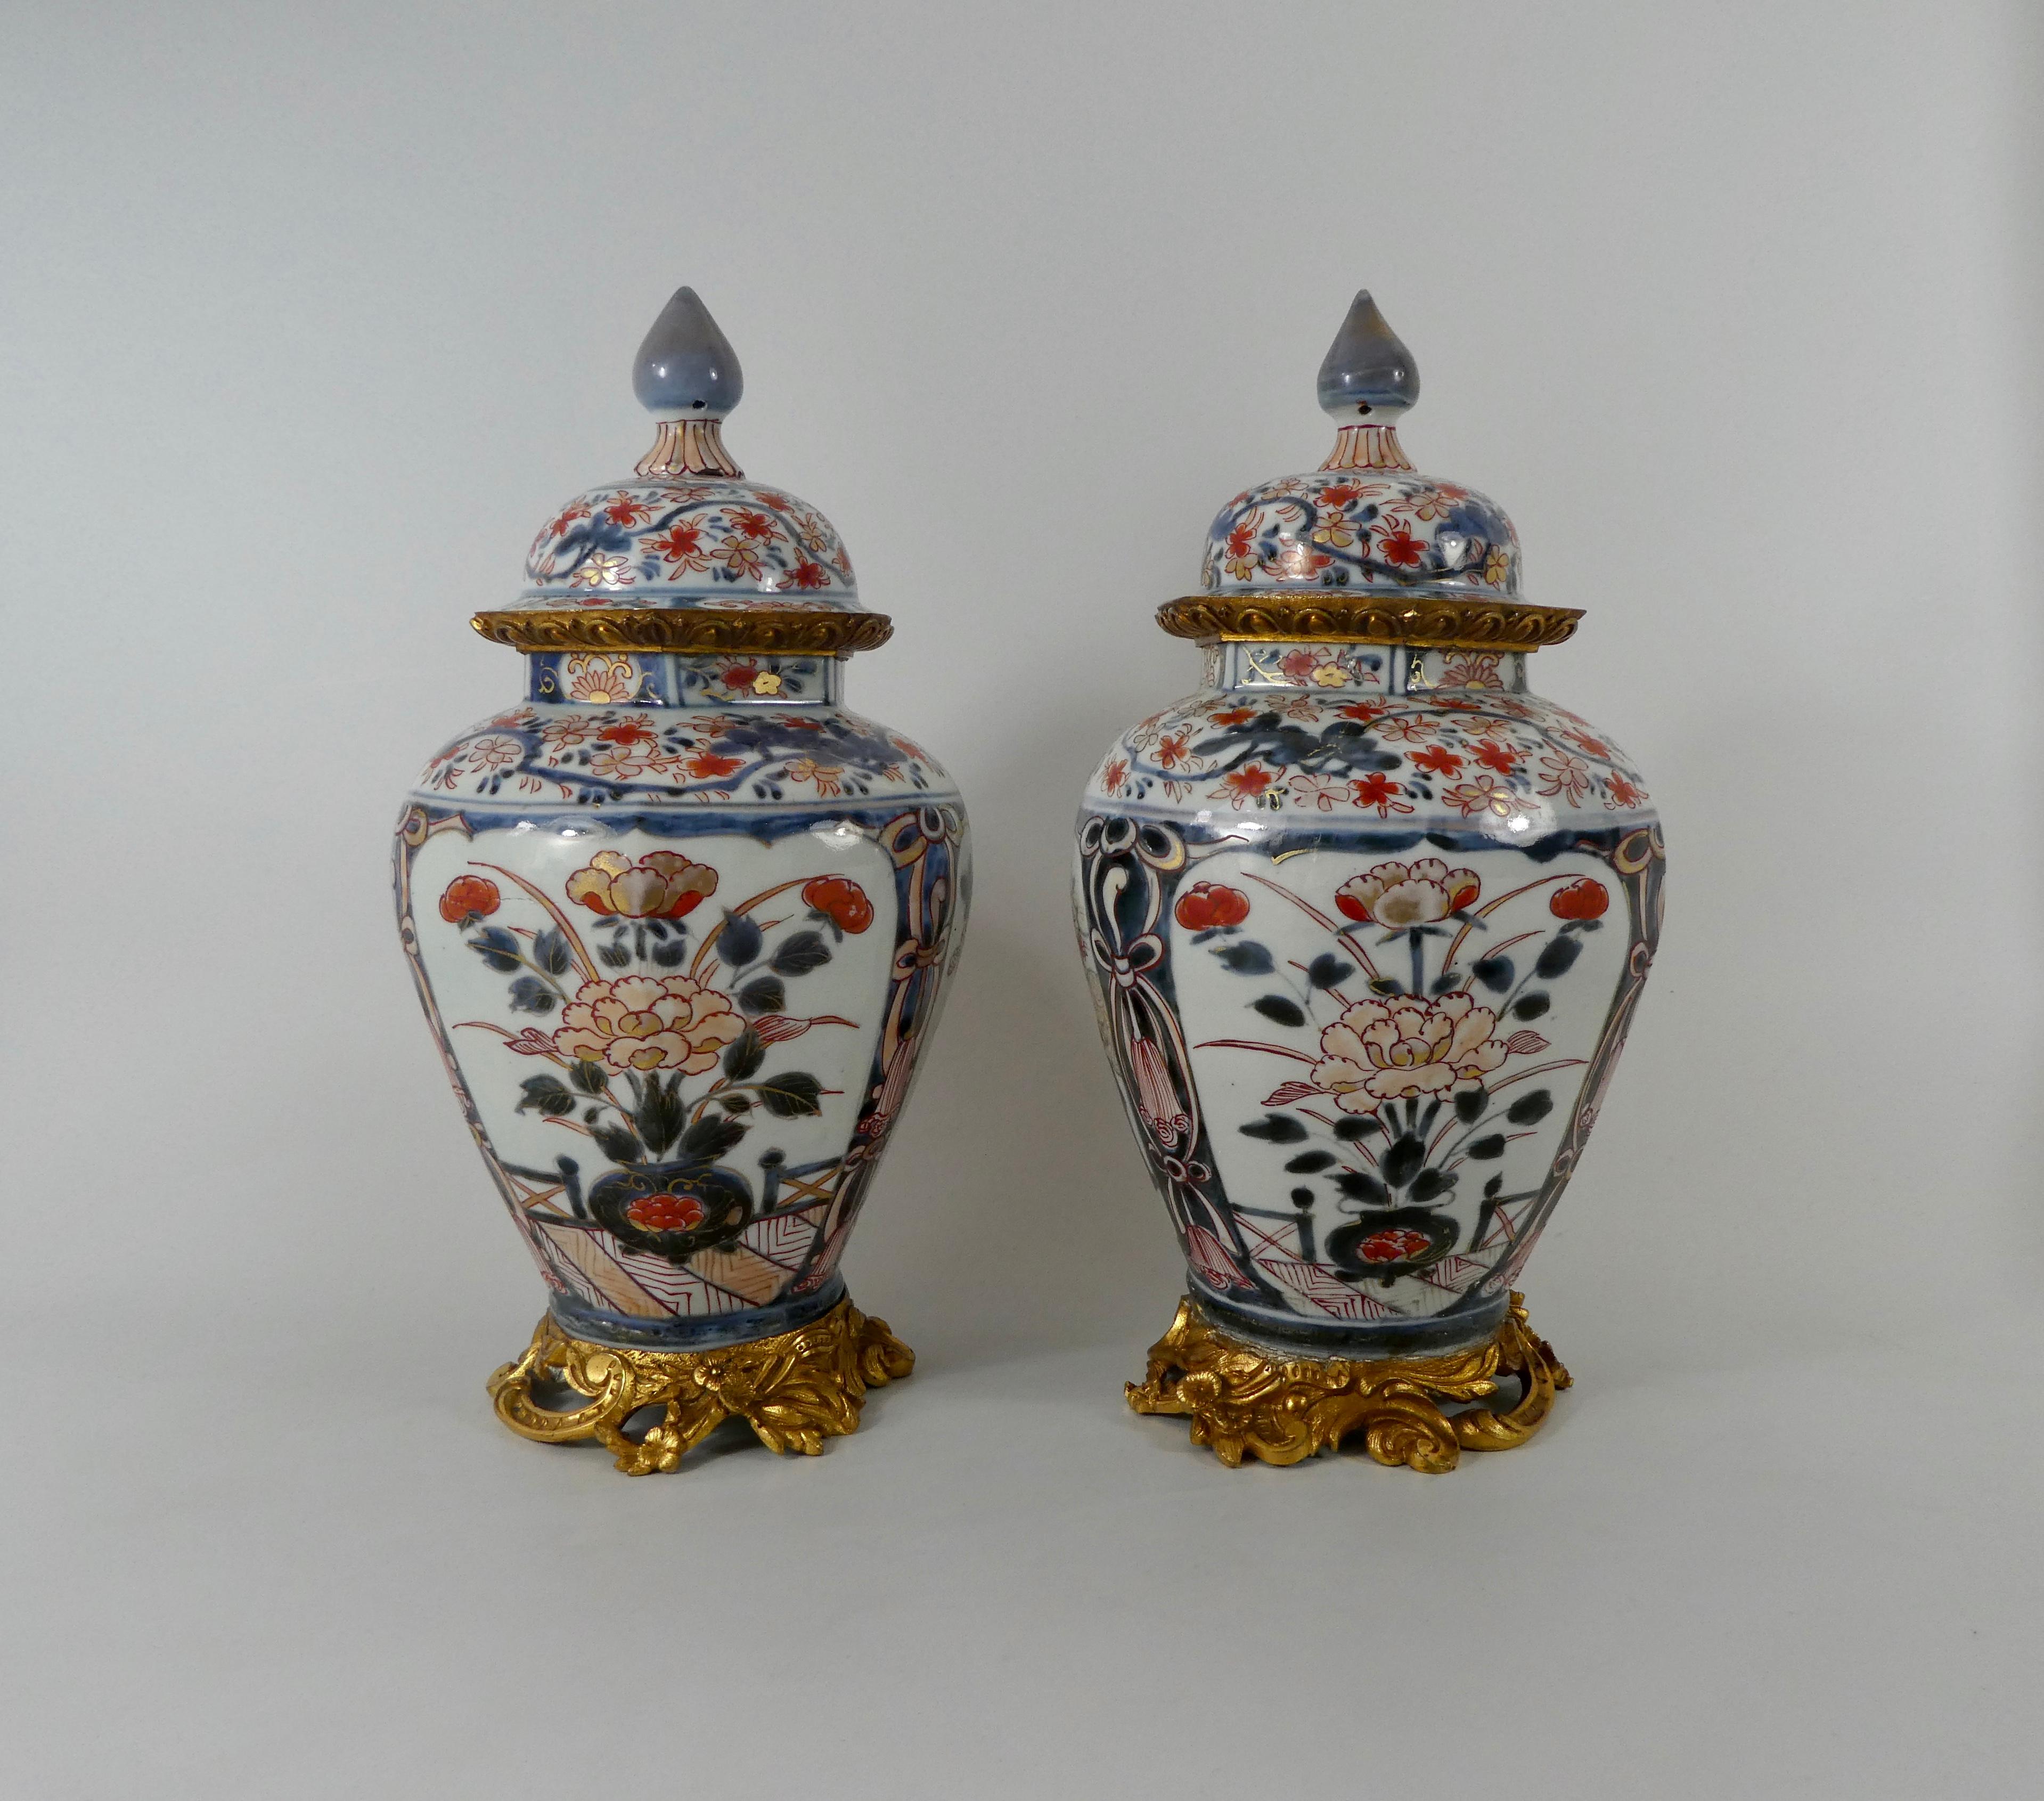 Pair Japanese Imari porcelain vases and covers, c. 1690. Genroku Period.